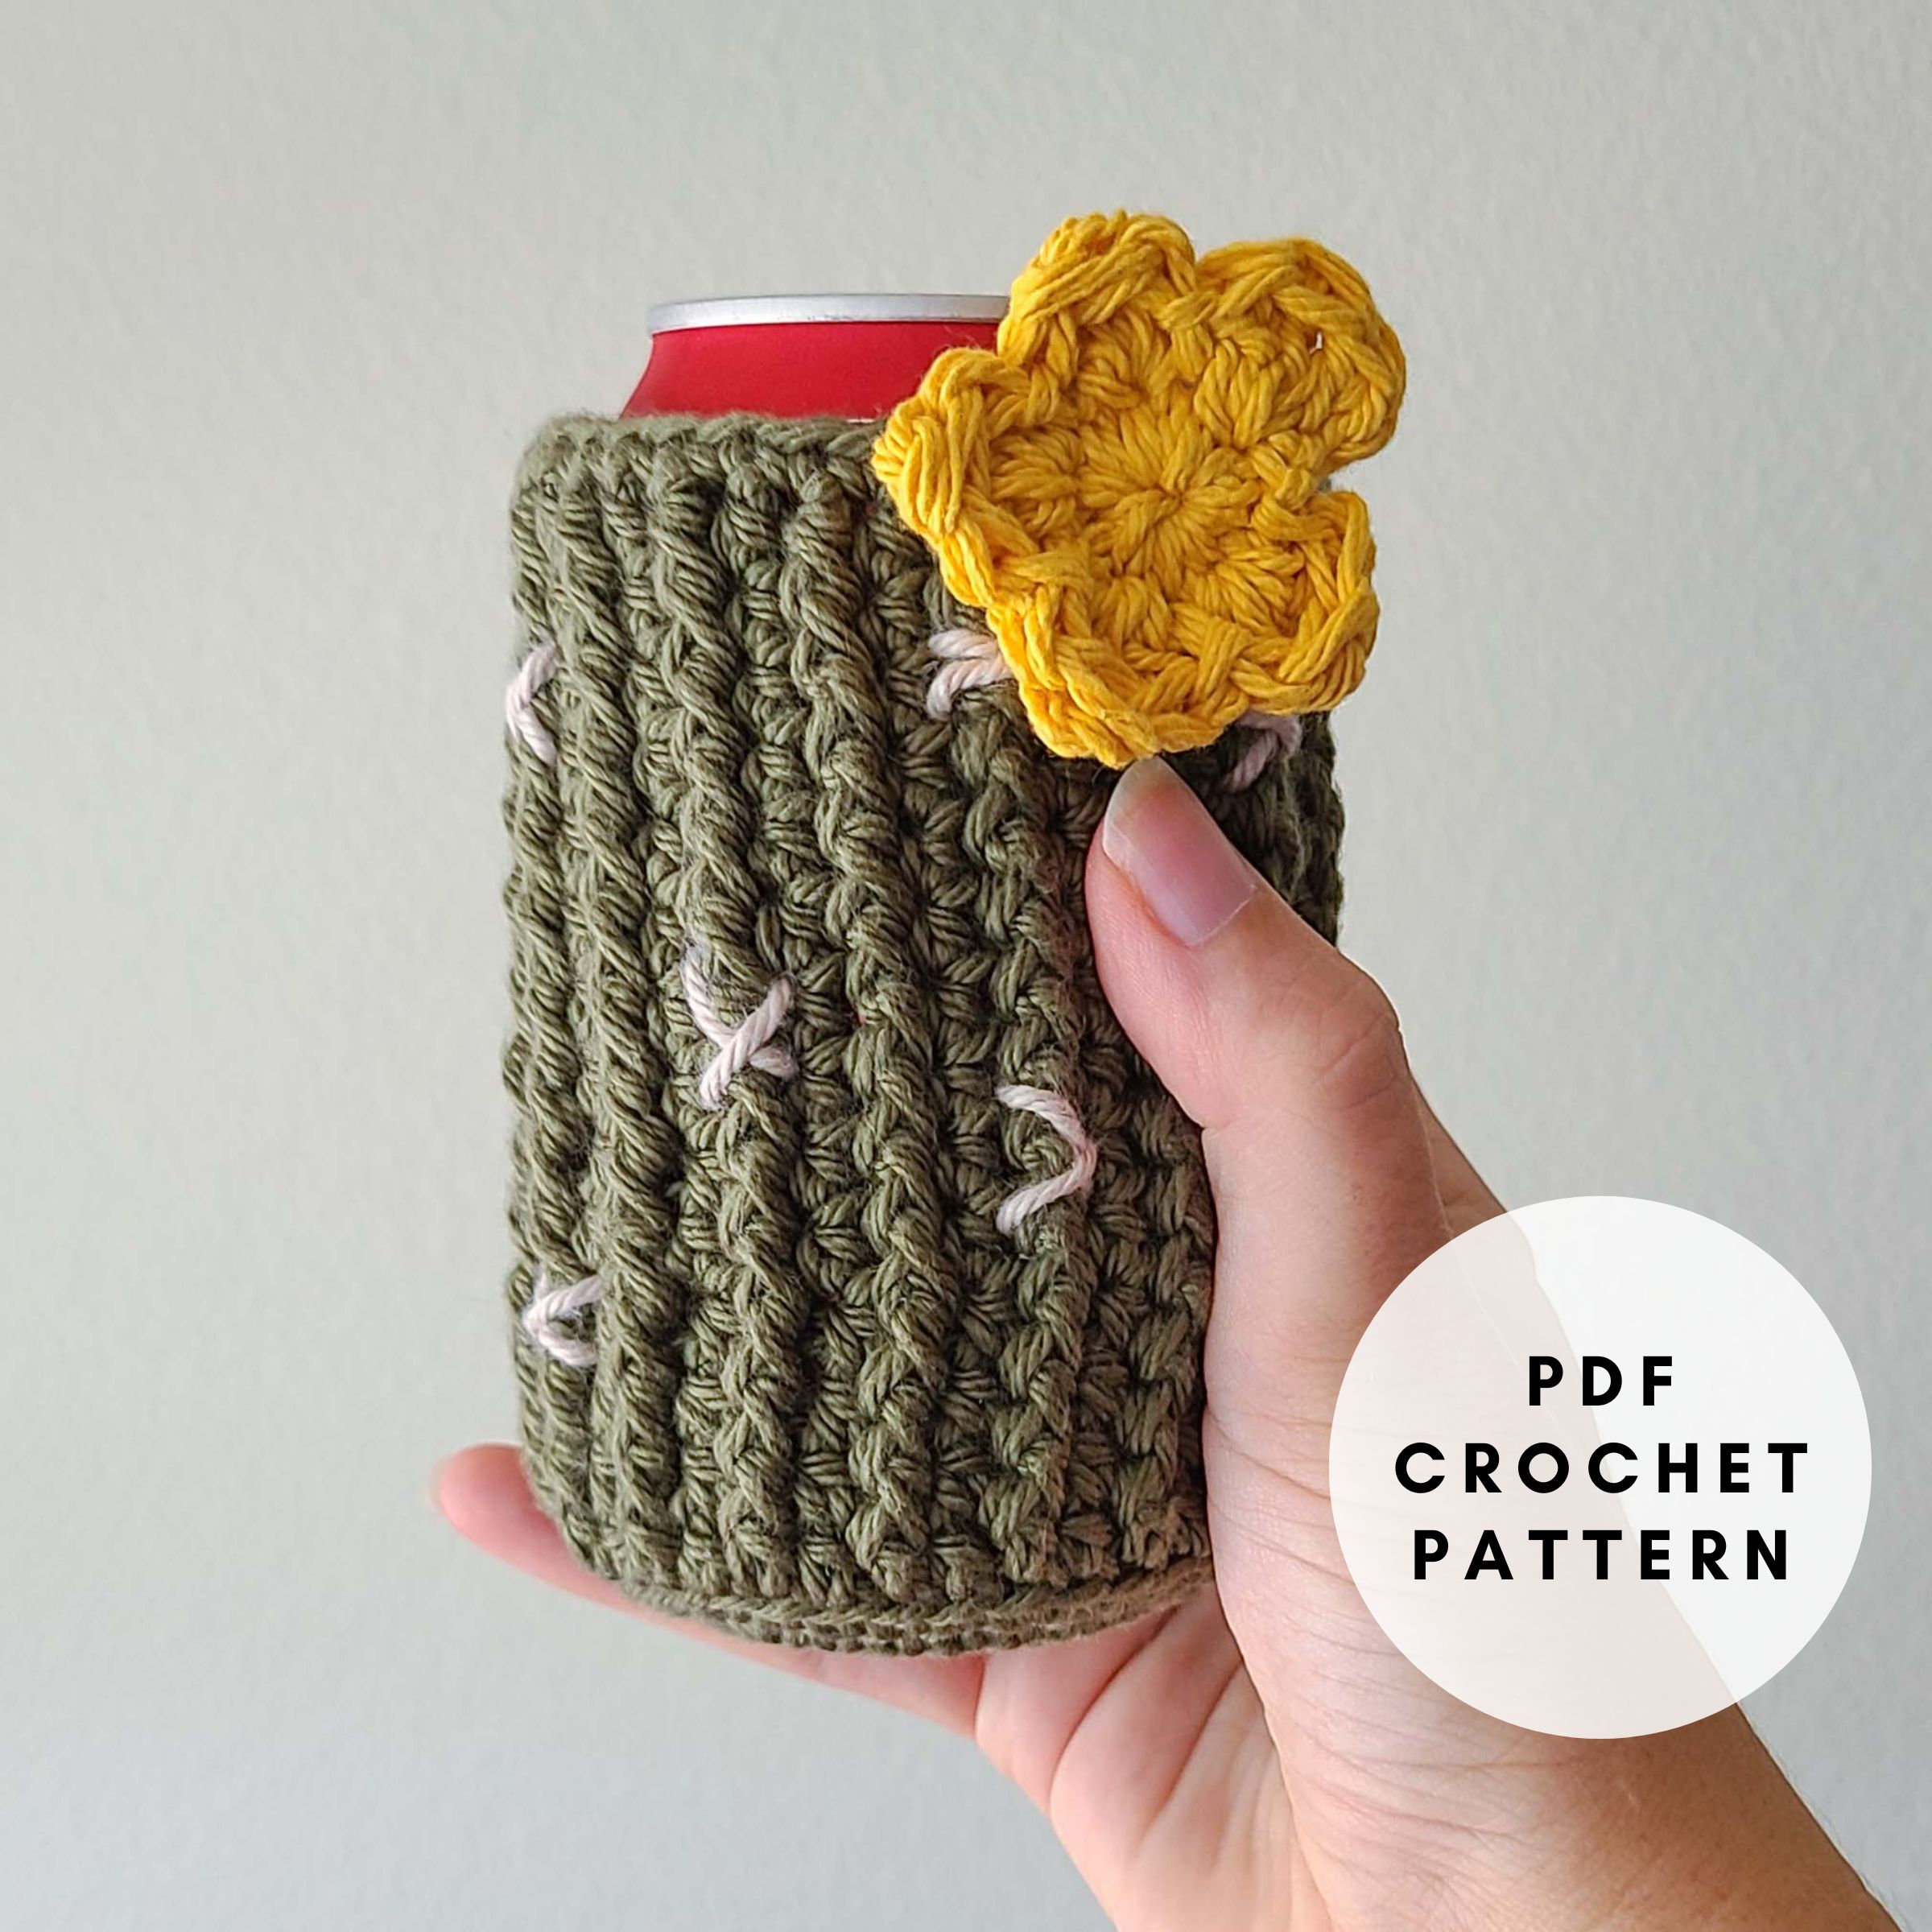 Crochet Can Cozy Free Pattern